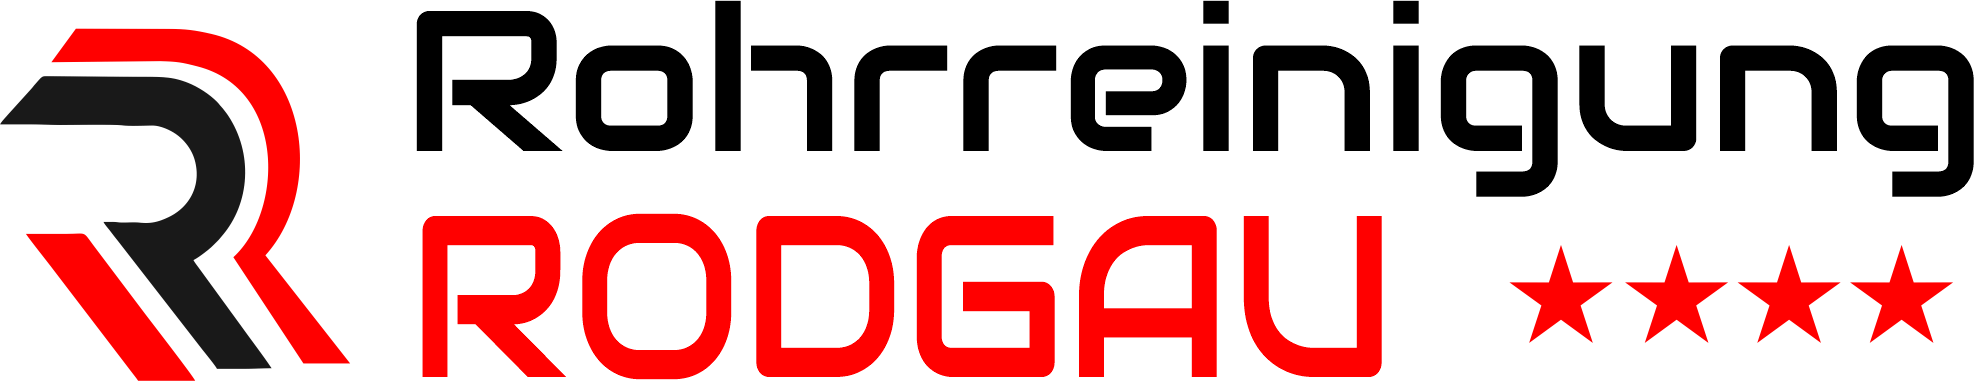 Rohrreinigung Rodgau Logo